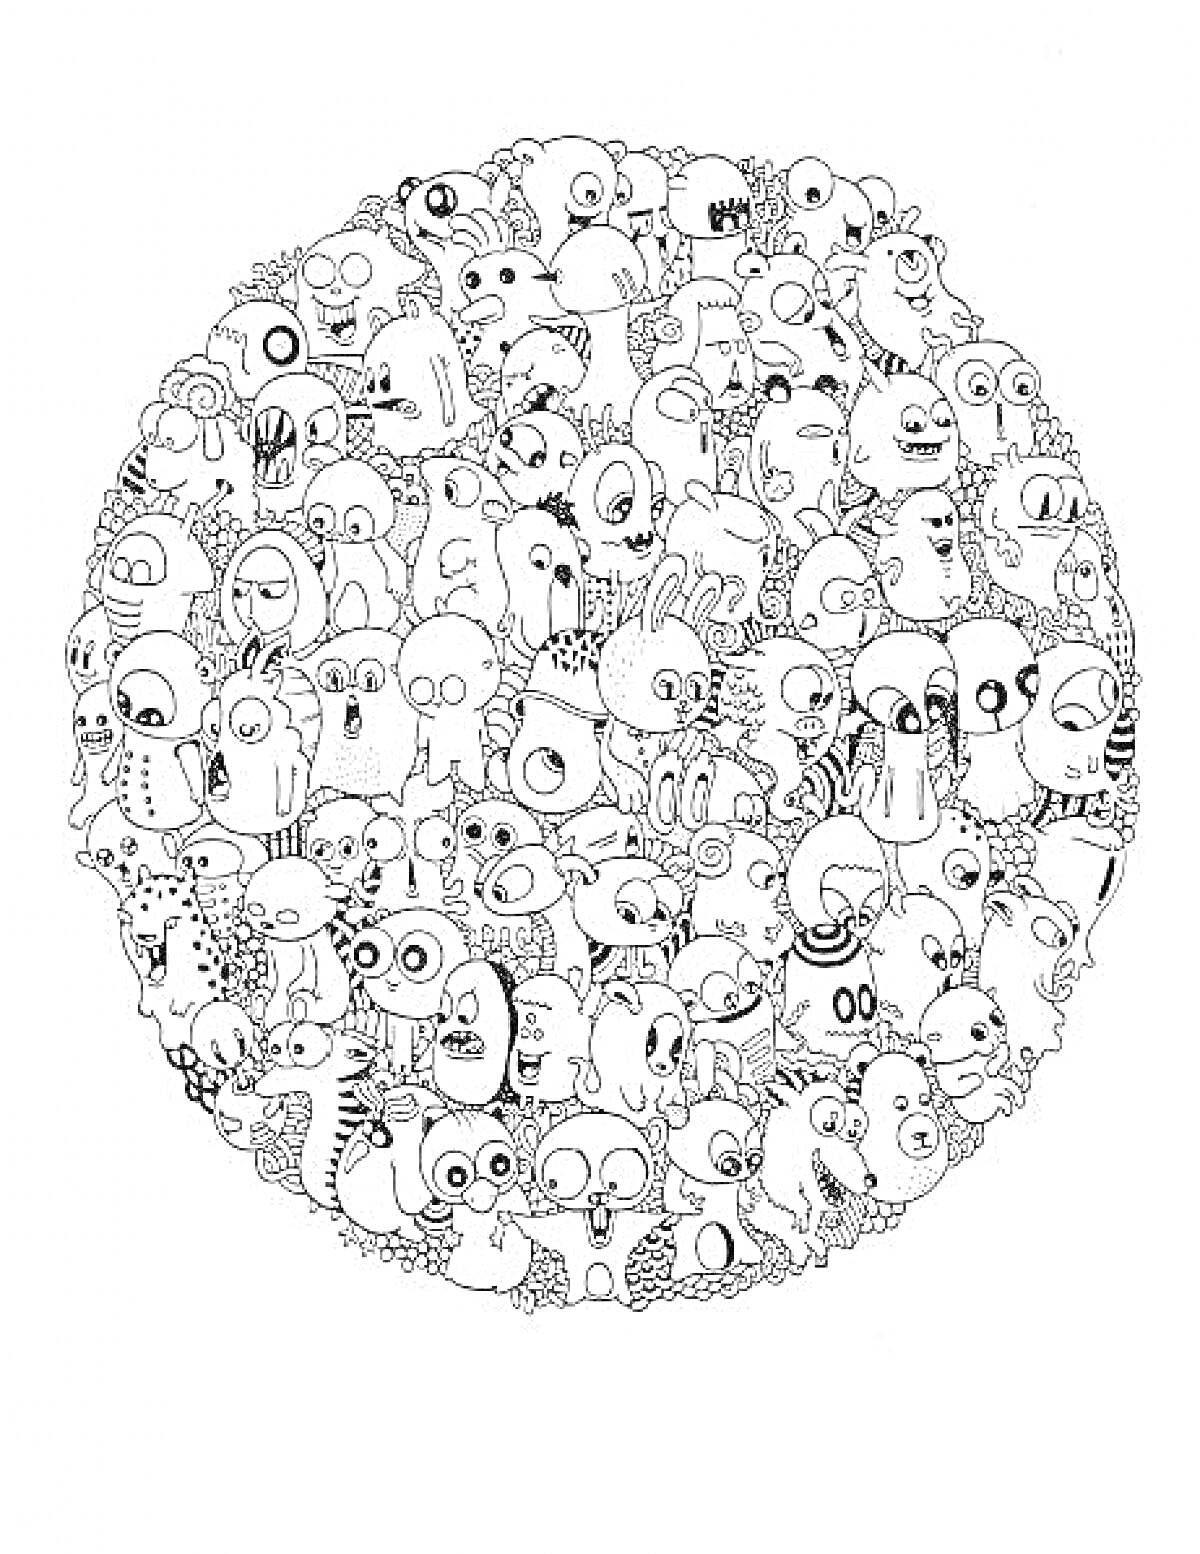 Раскраска Круглый мир странных существ с большими глазами и забавными выражениями лиц